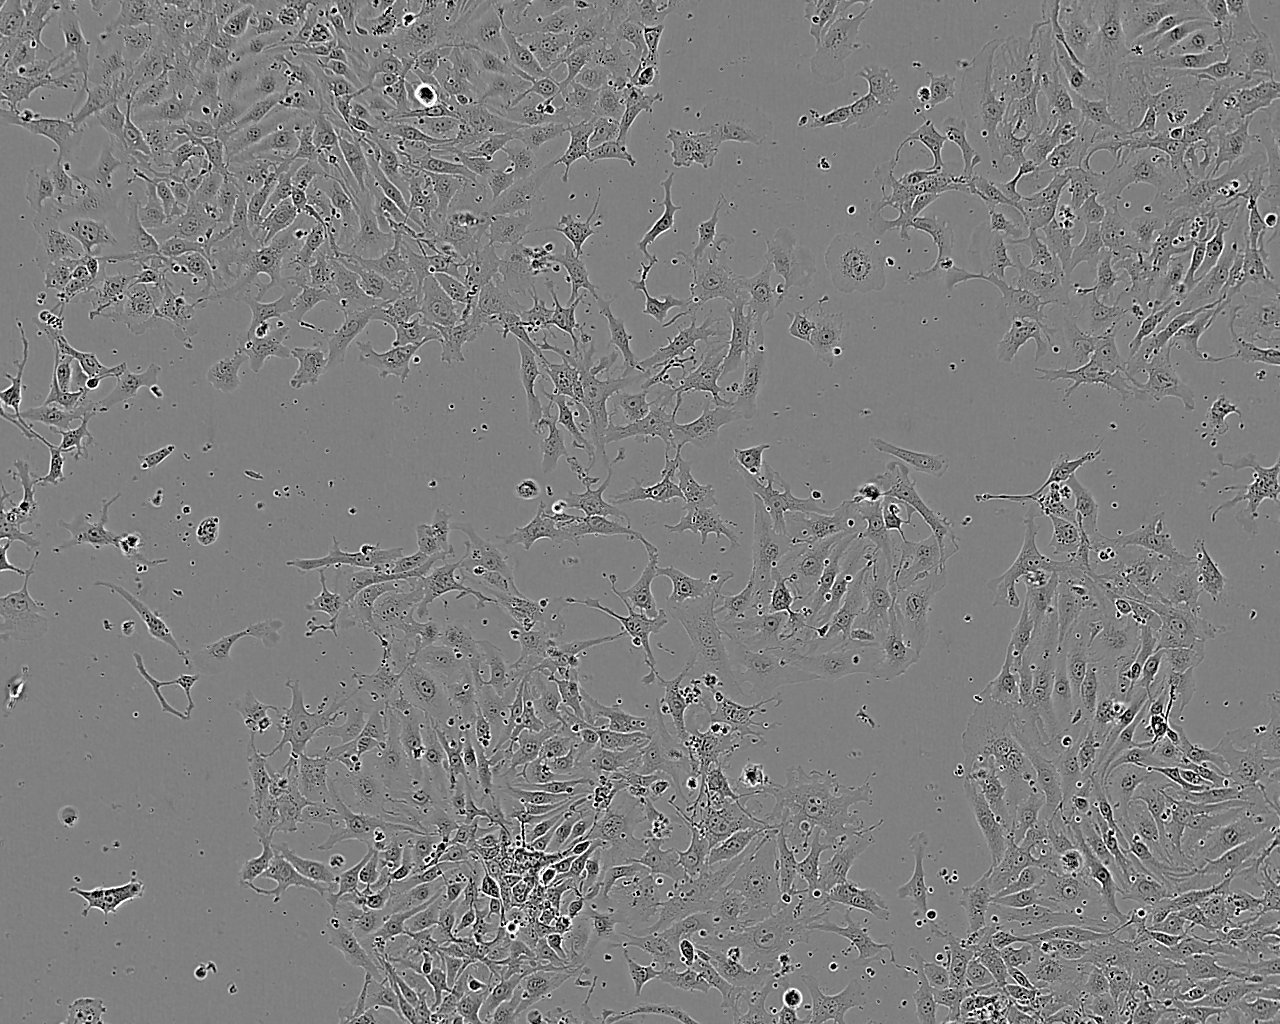 NIH 3T3 小鼠胚胎细胞系